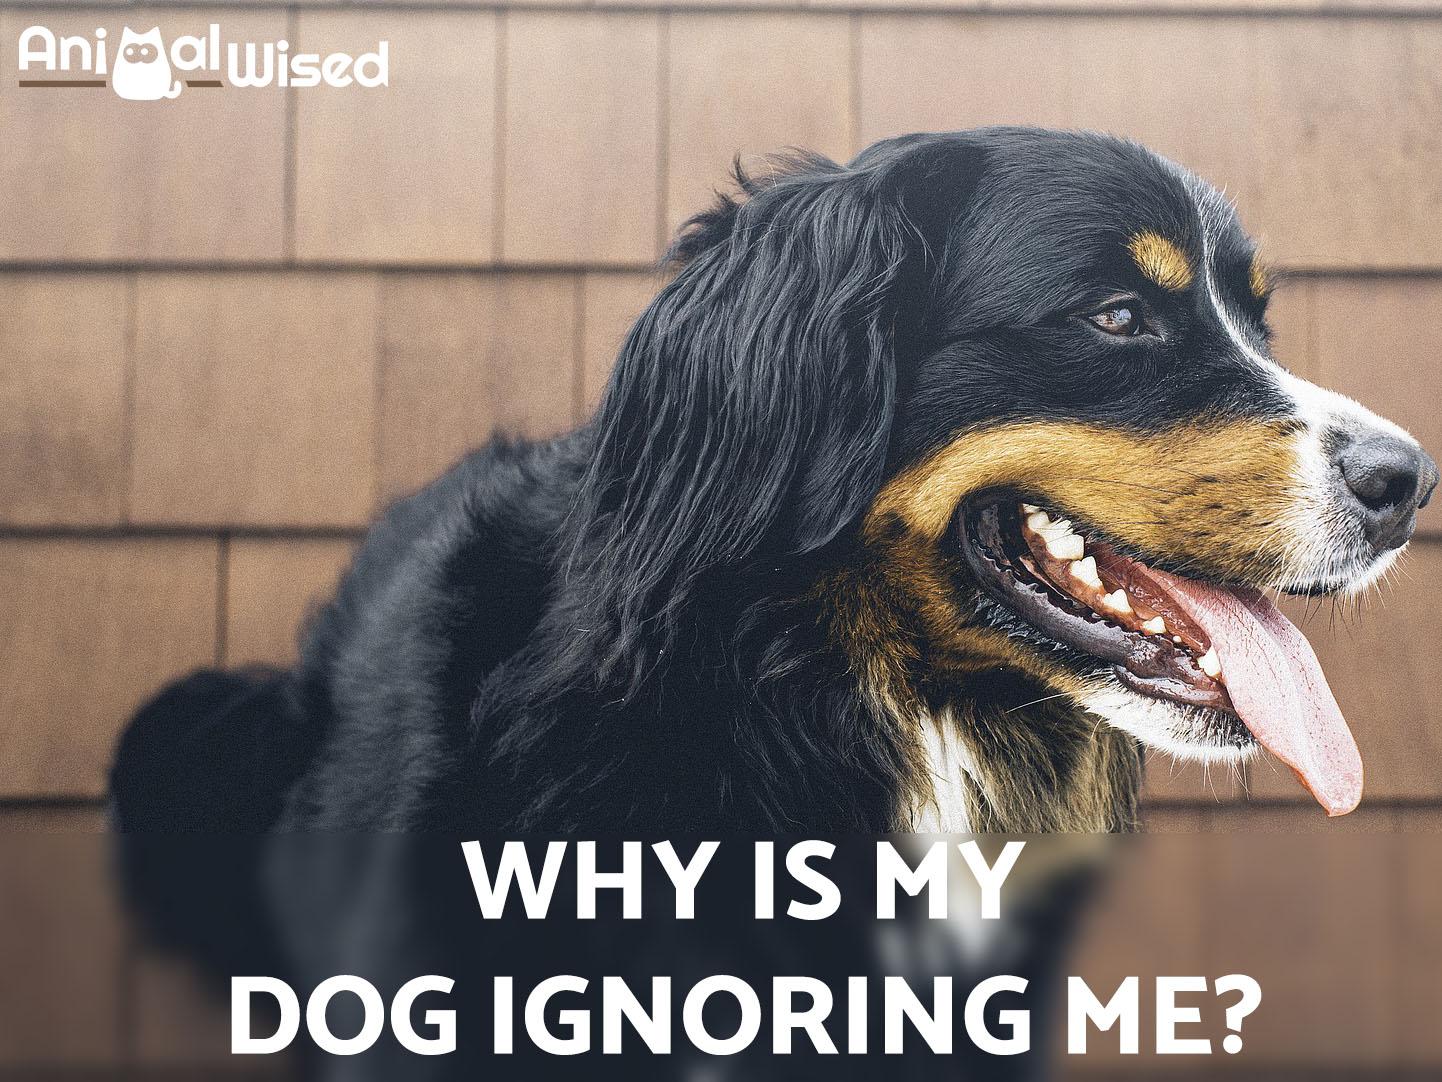 Mi Perro Sigue Ignorándome: ¿qué Debo Hacer?